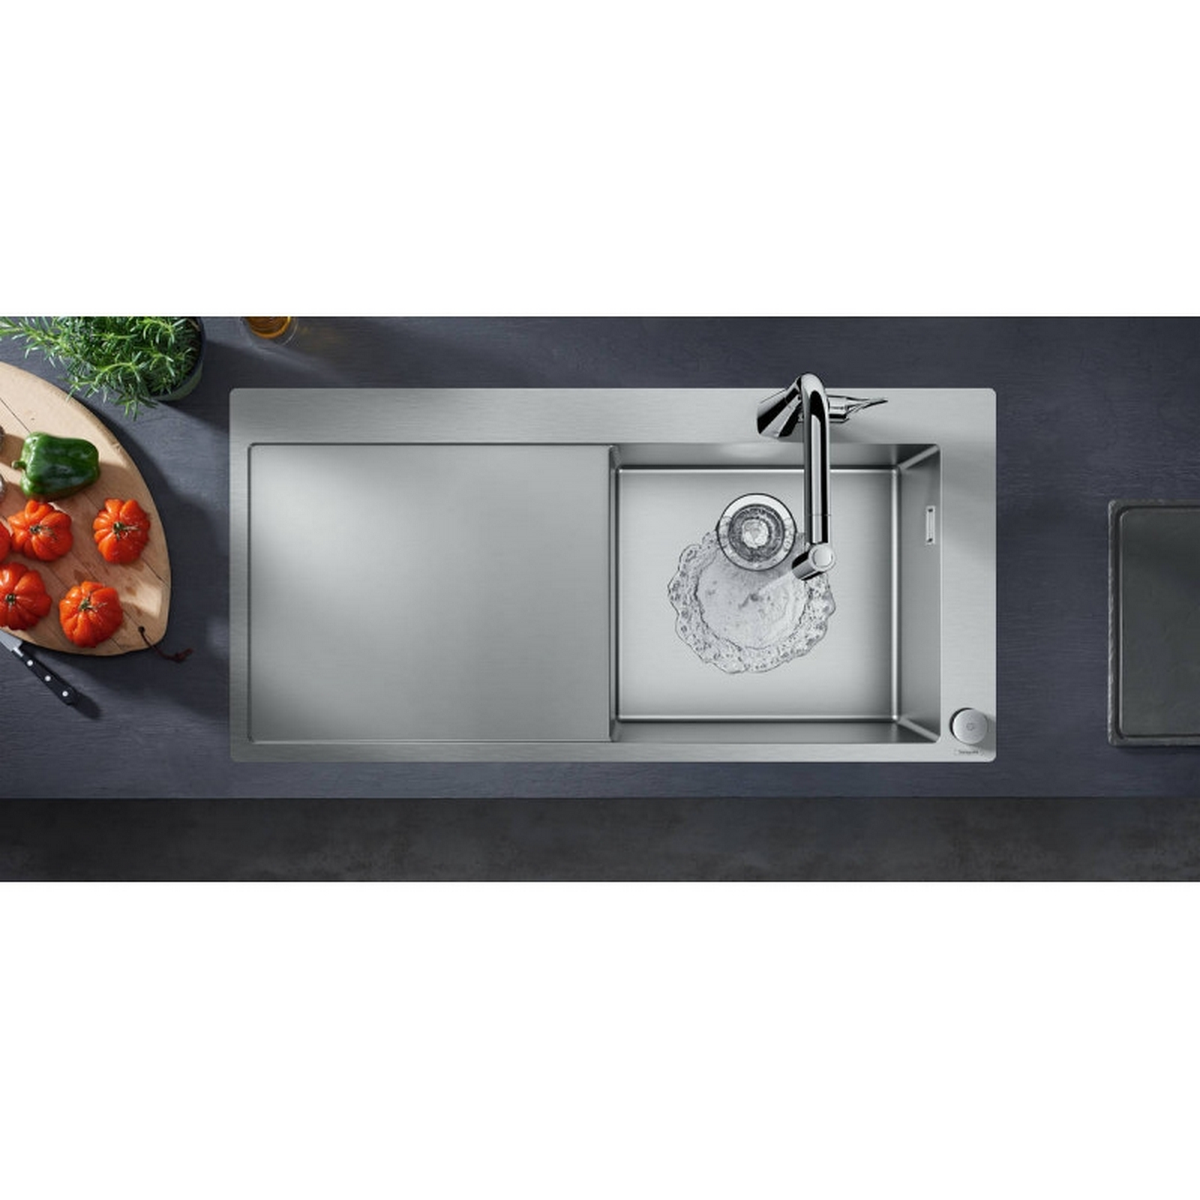 Кухонний комплект Hansgrohe C71 C71-F450-02 43208800 з сушаркою зліва ціна 0 грн - фотографія 2